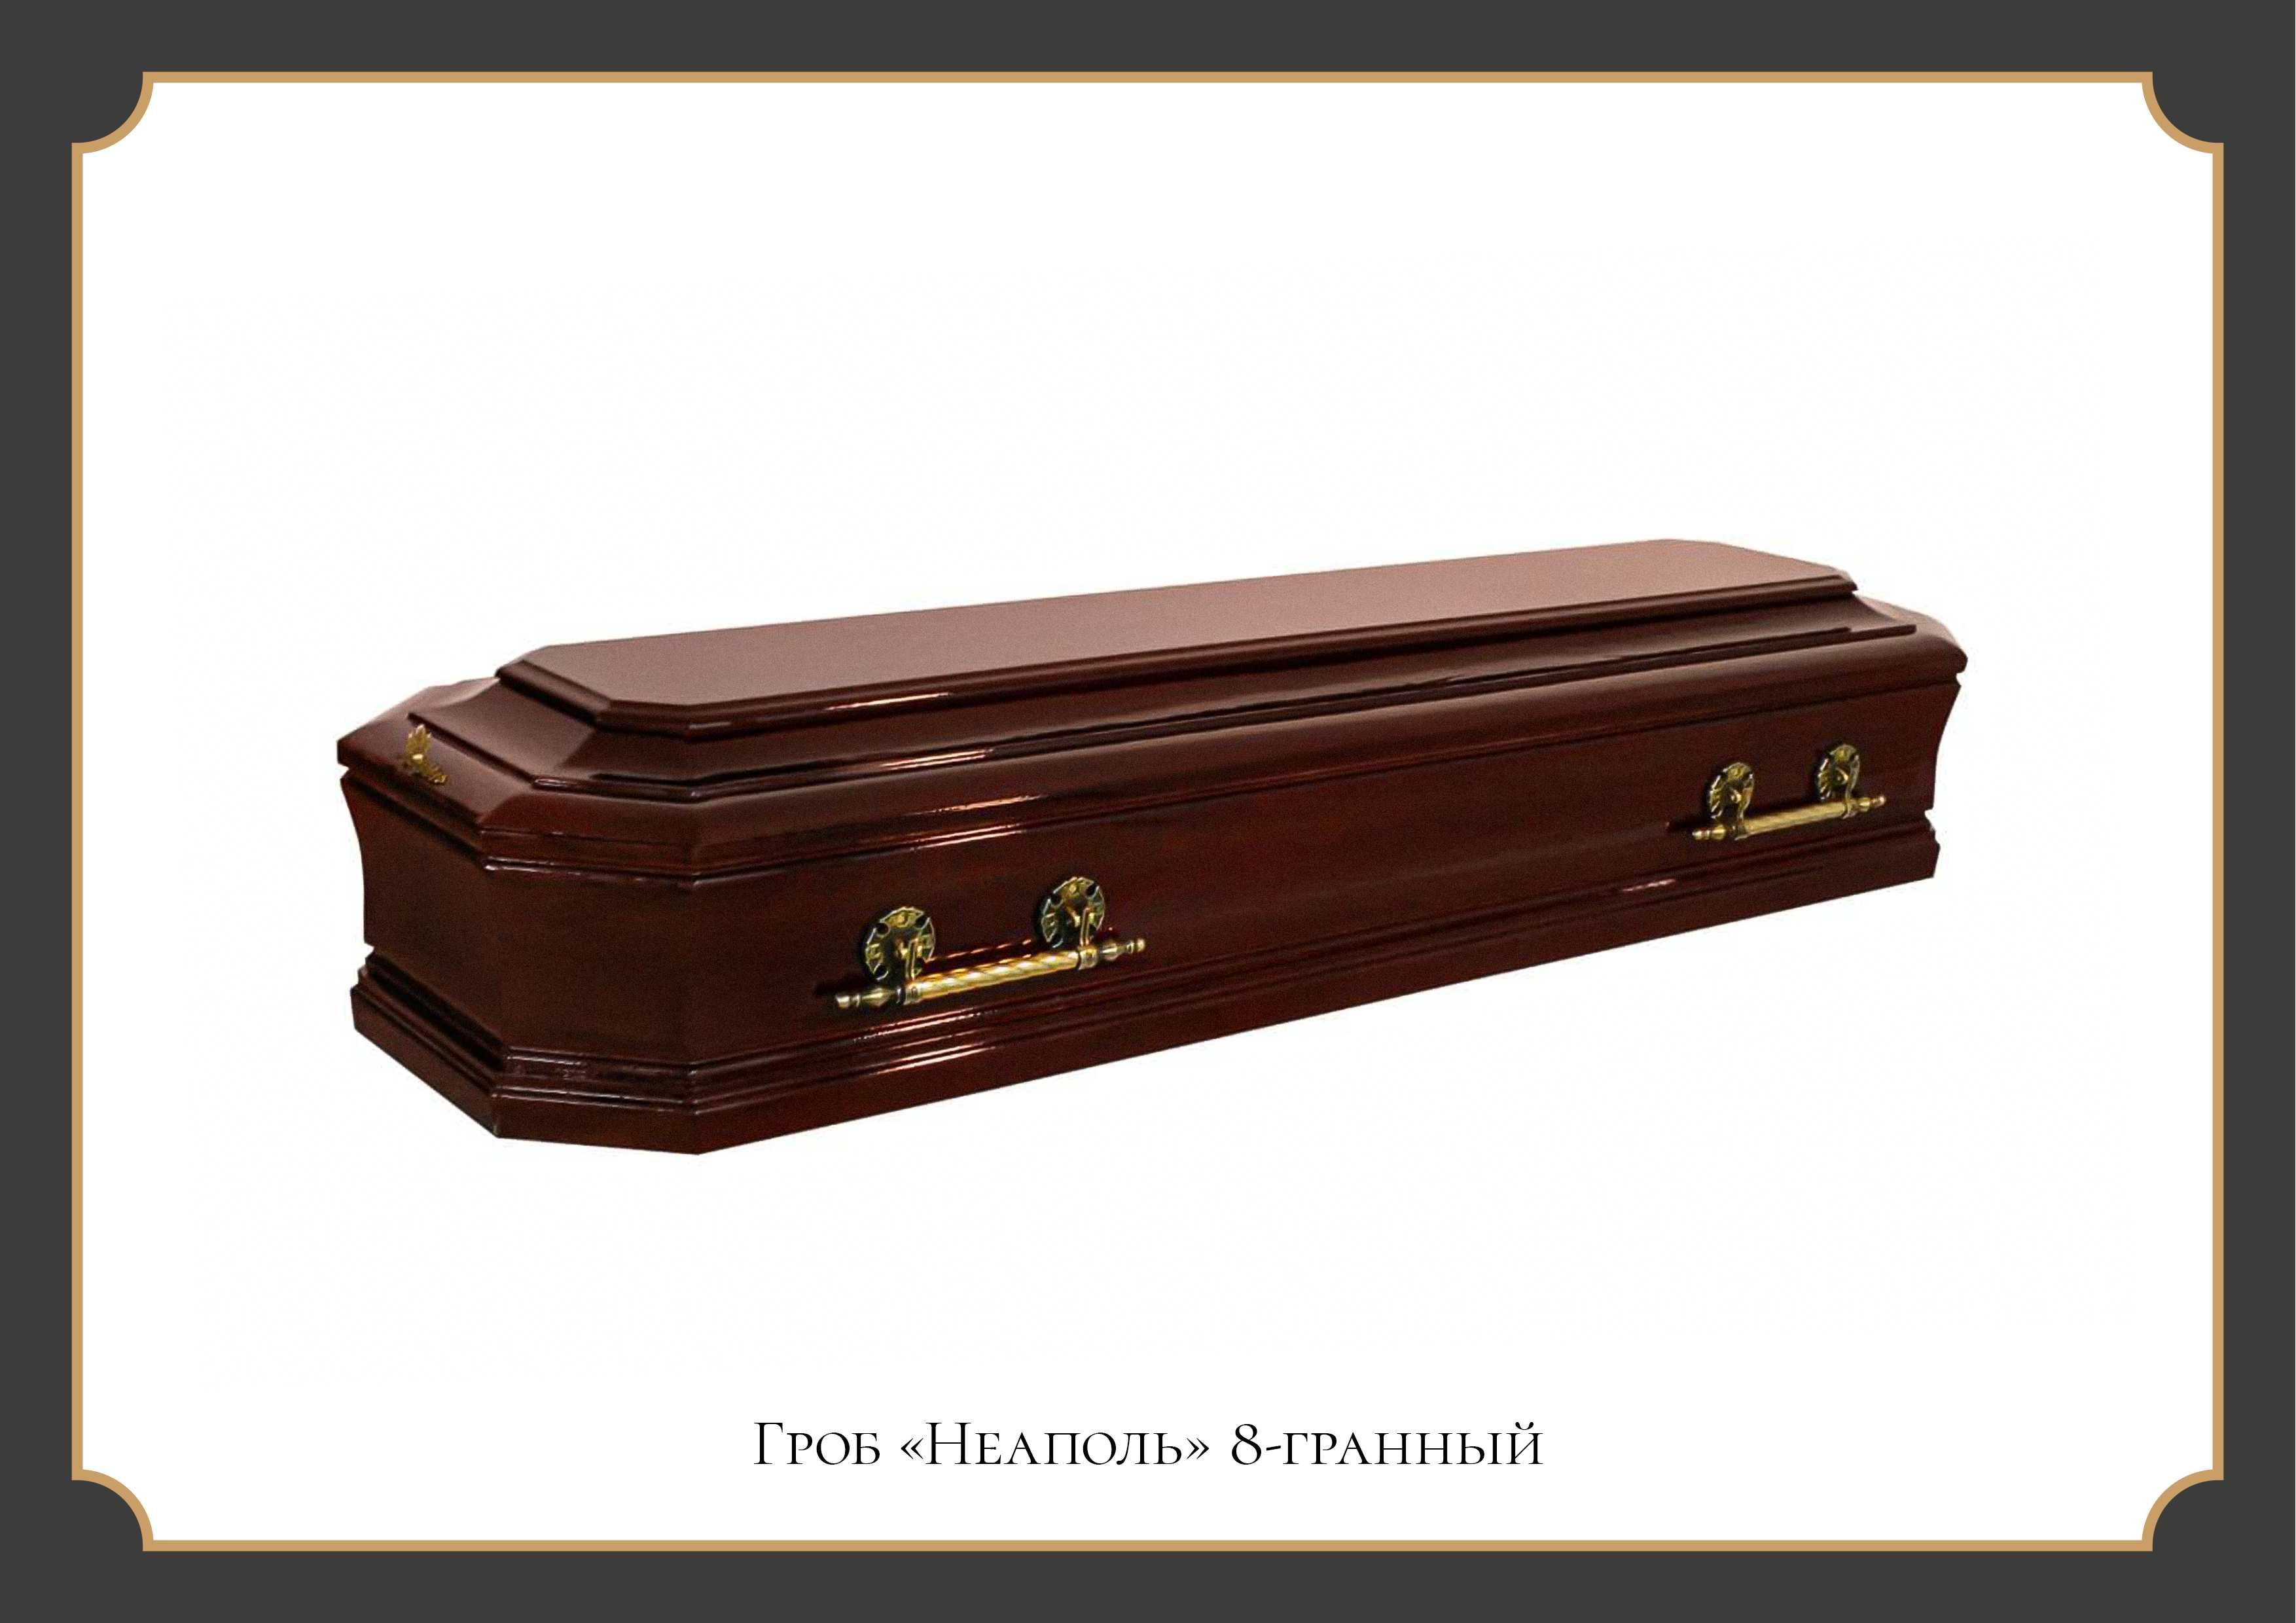 Ритуальные услуги, похороны по доступным ценам, гробы, перевозка